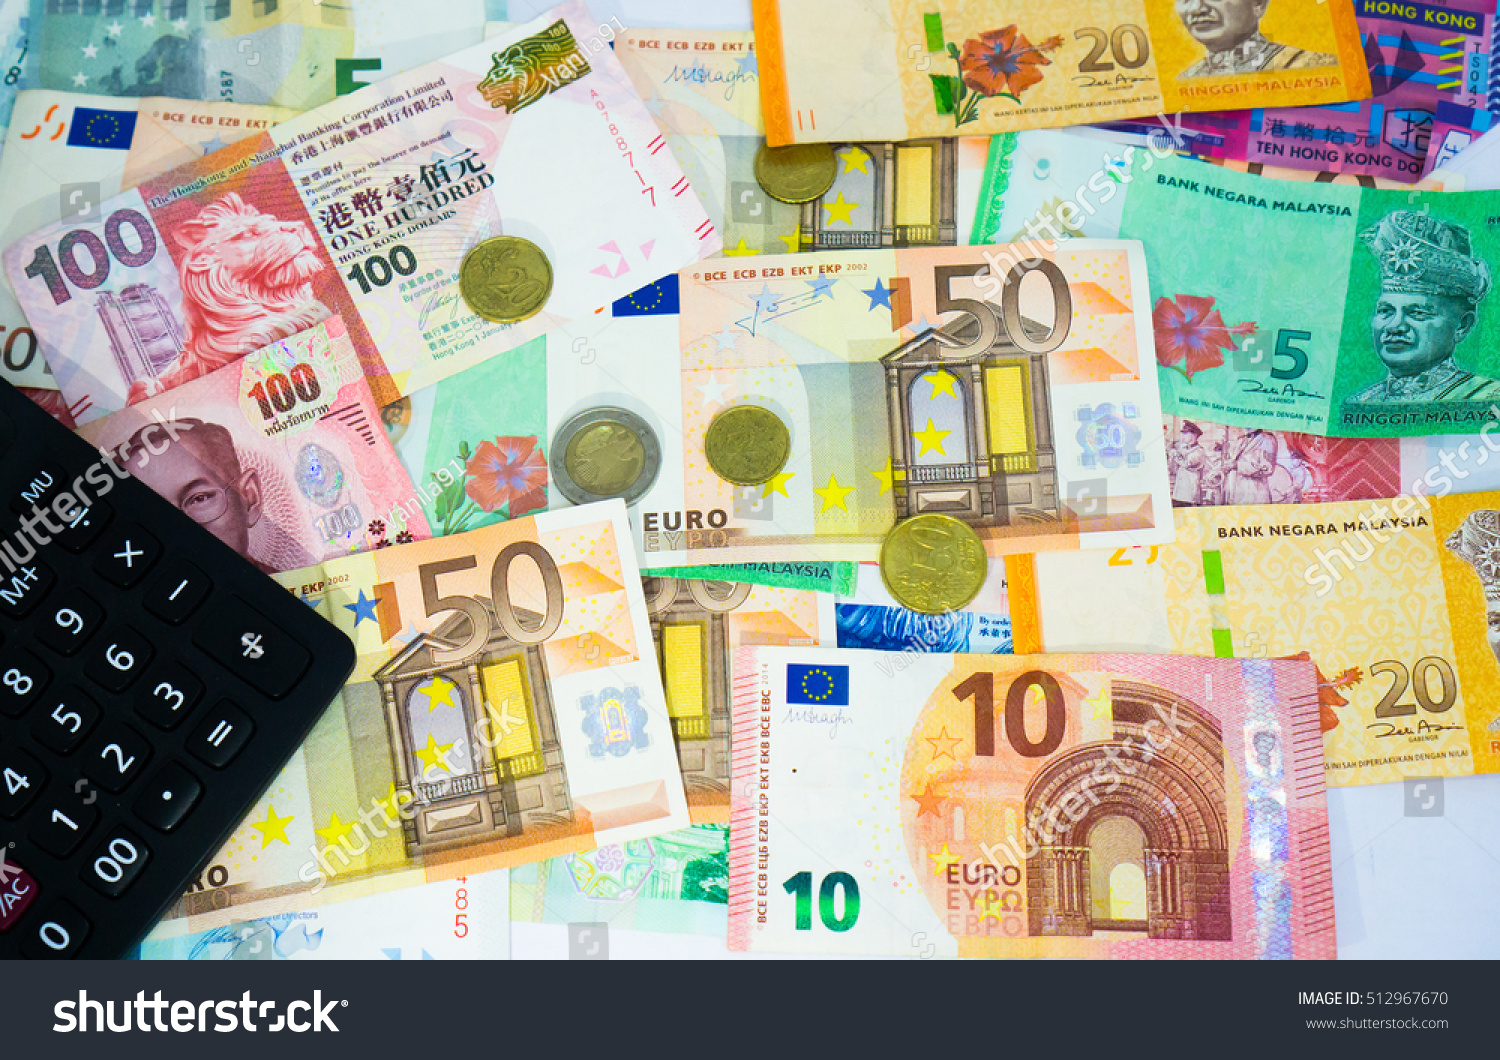 Euro to ringgit